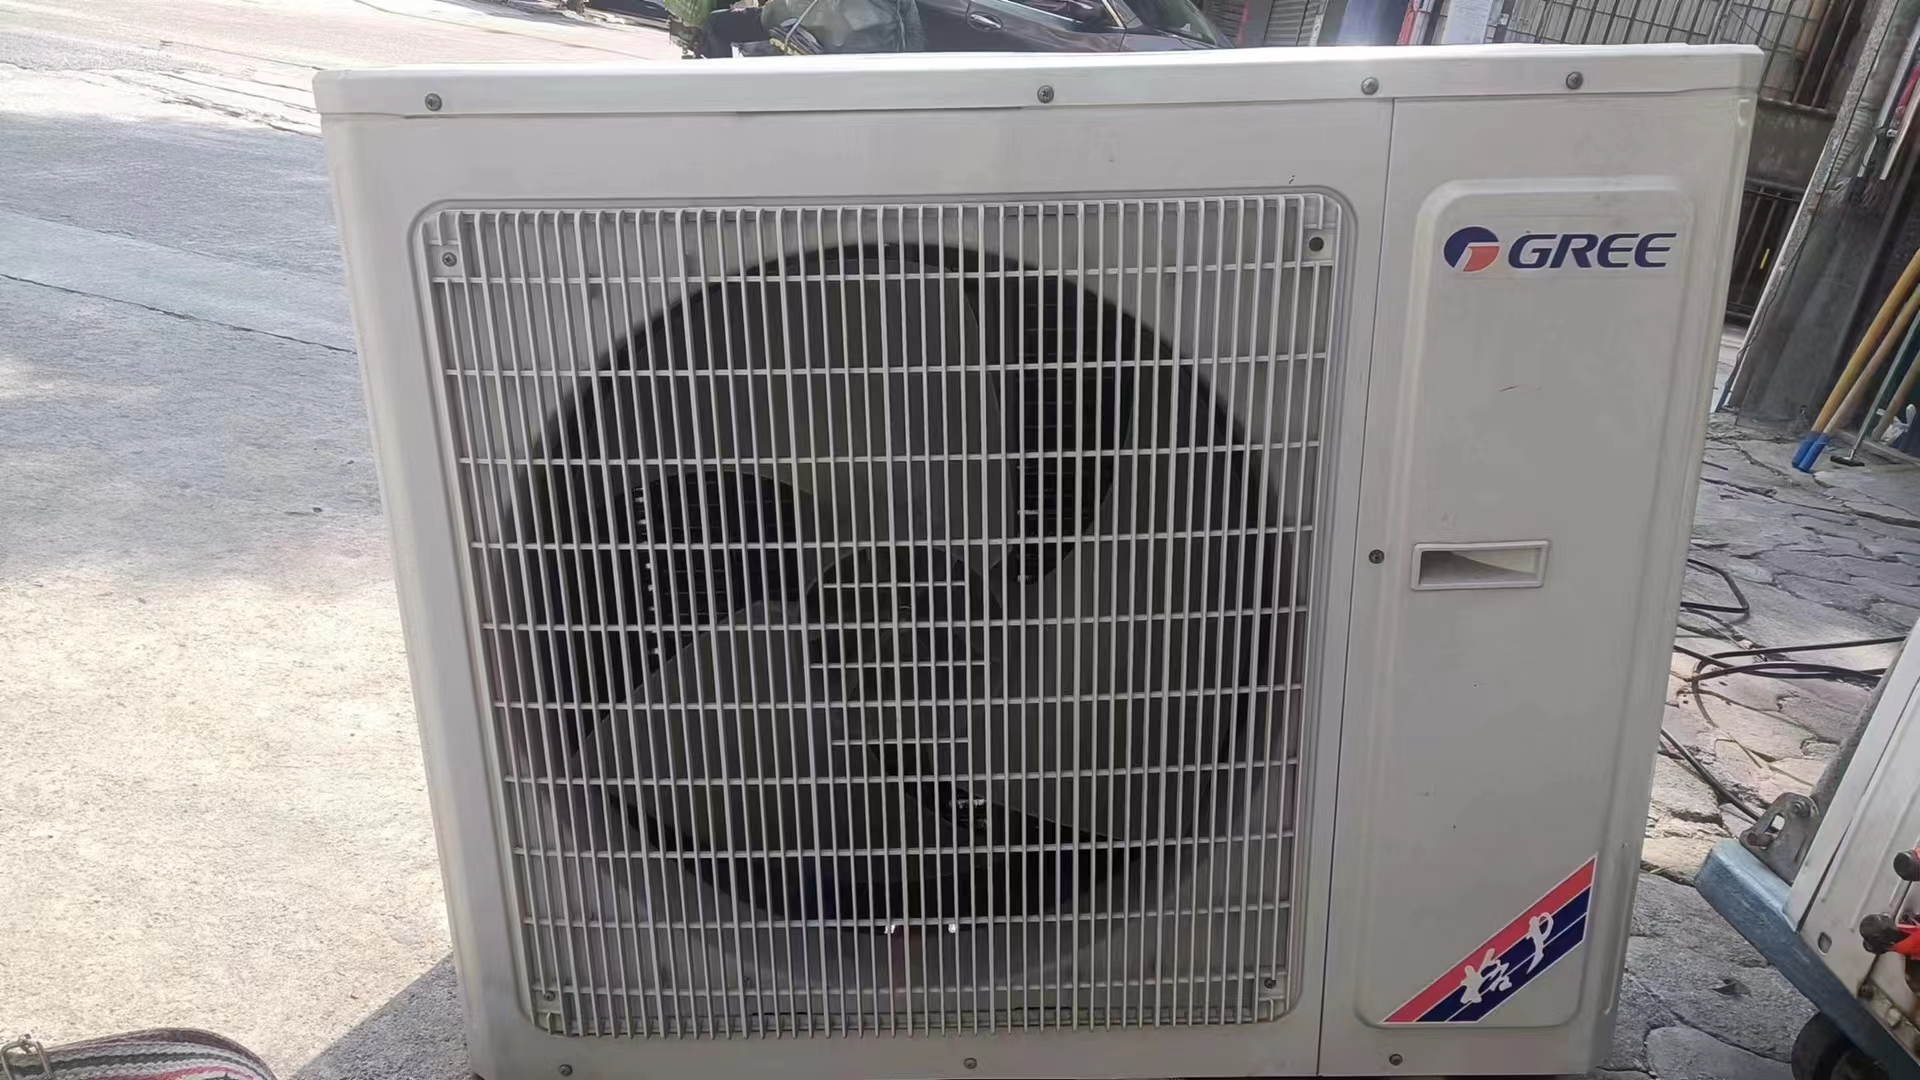 鄞州区东郊空调维修,空调安装,,实实在在,空调移机,空调拆装